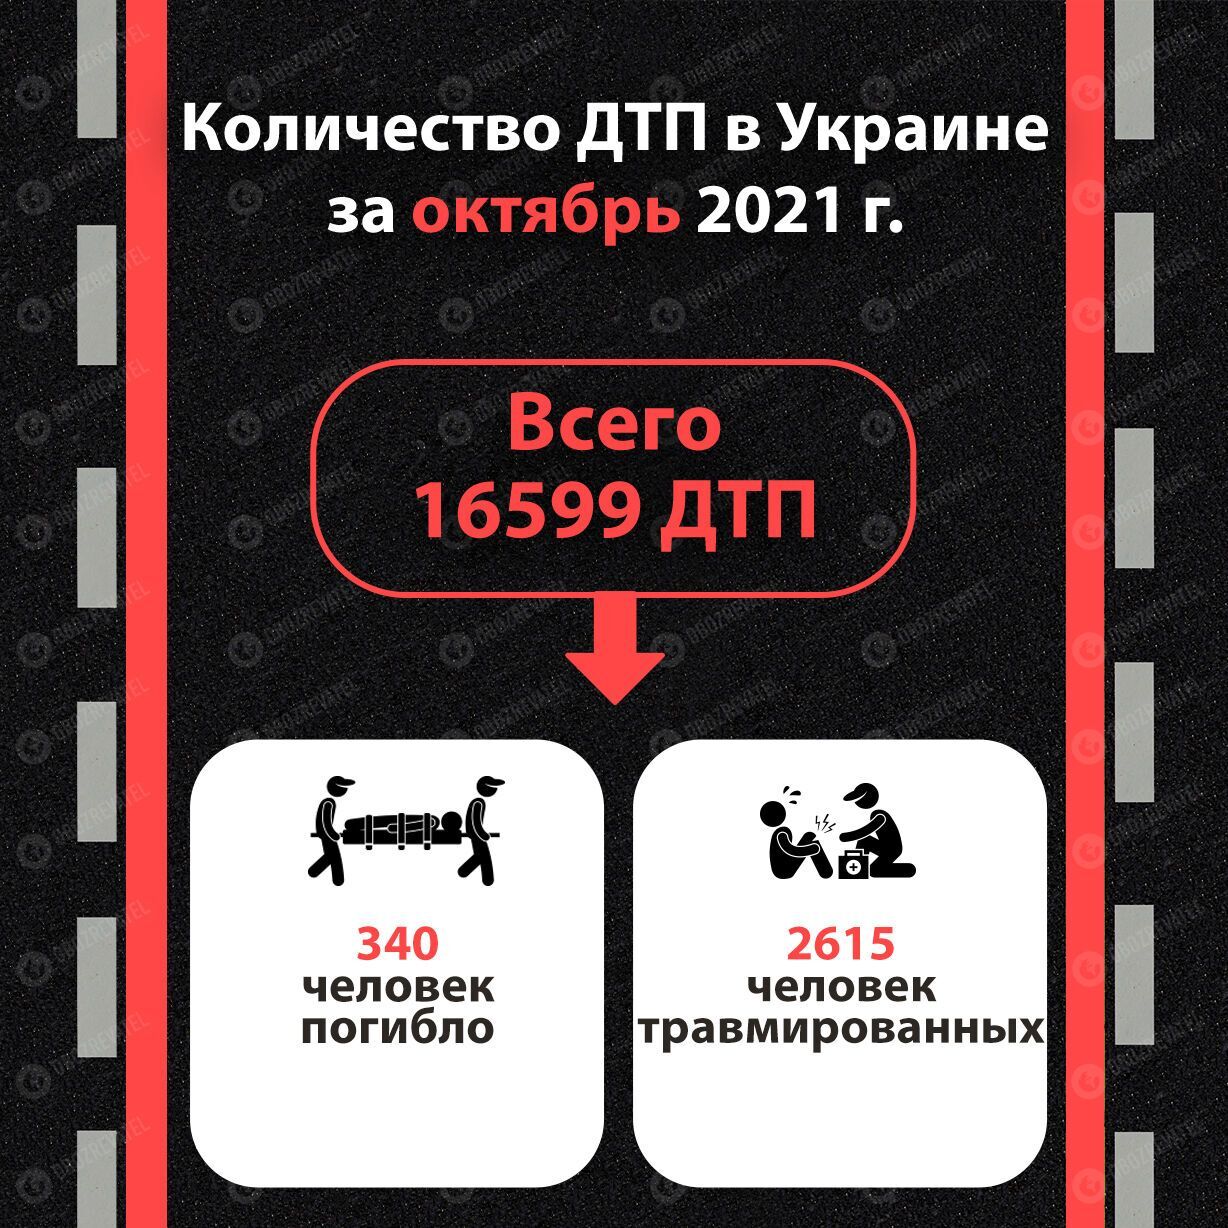 Статистика ДТП в Україні у жовтні